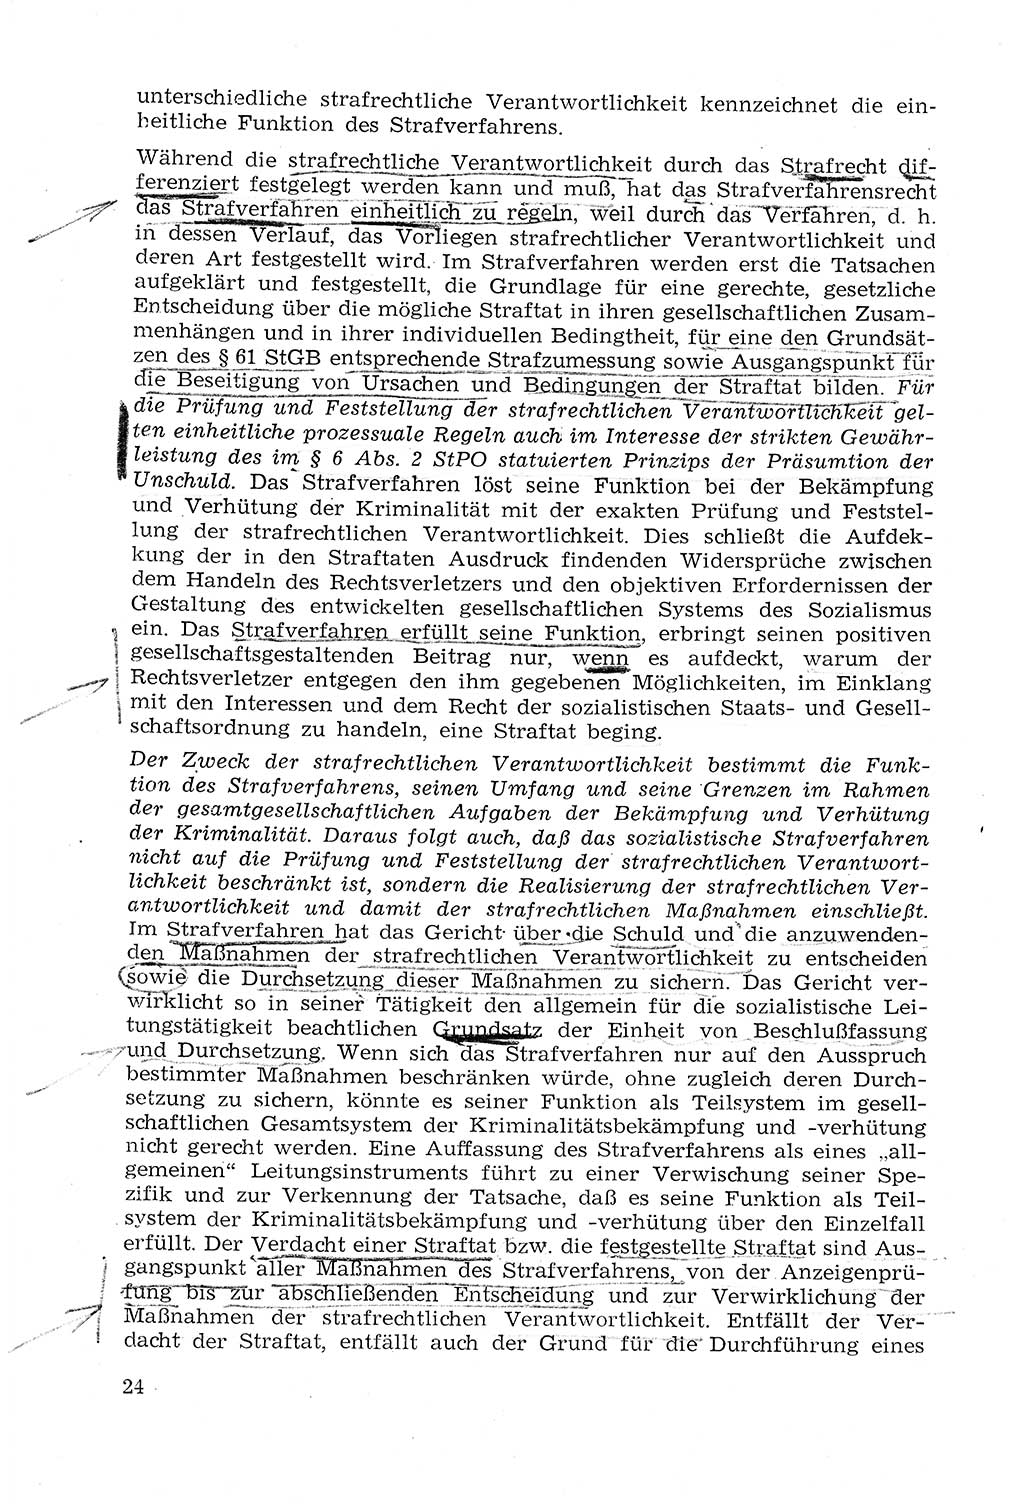 Strafprozeßrecht der DDR (Deutsche Demokratische Republik), Lehrmaterial 1969, Seite 24 (Strafprozeßr. DDR Lehrmat. 1969, S. 24)